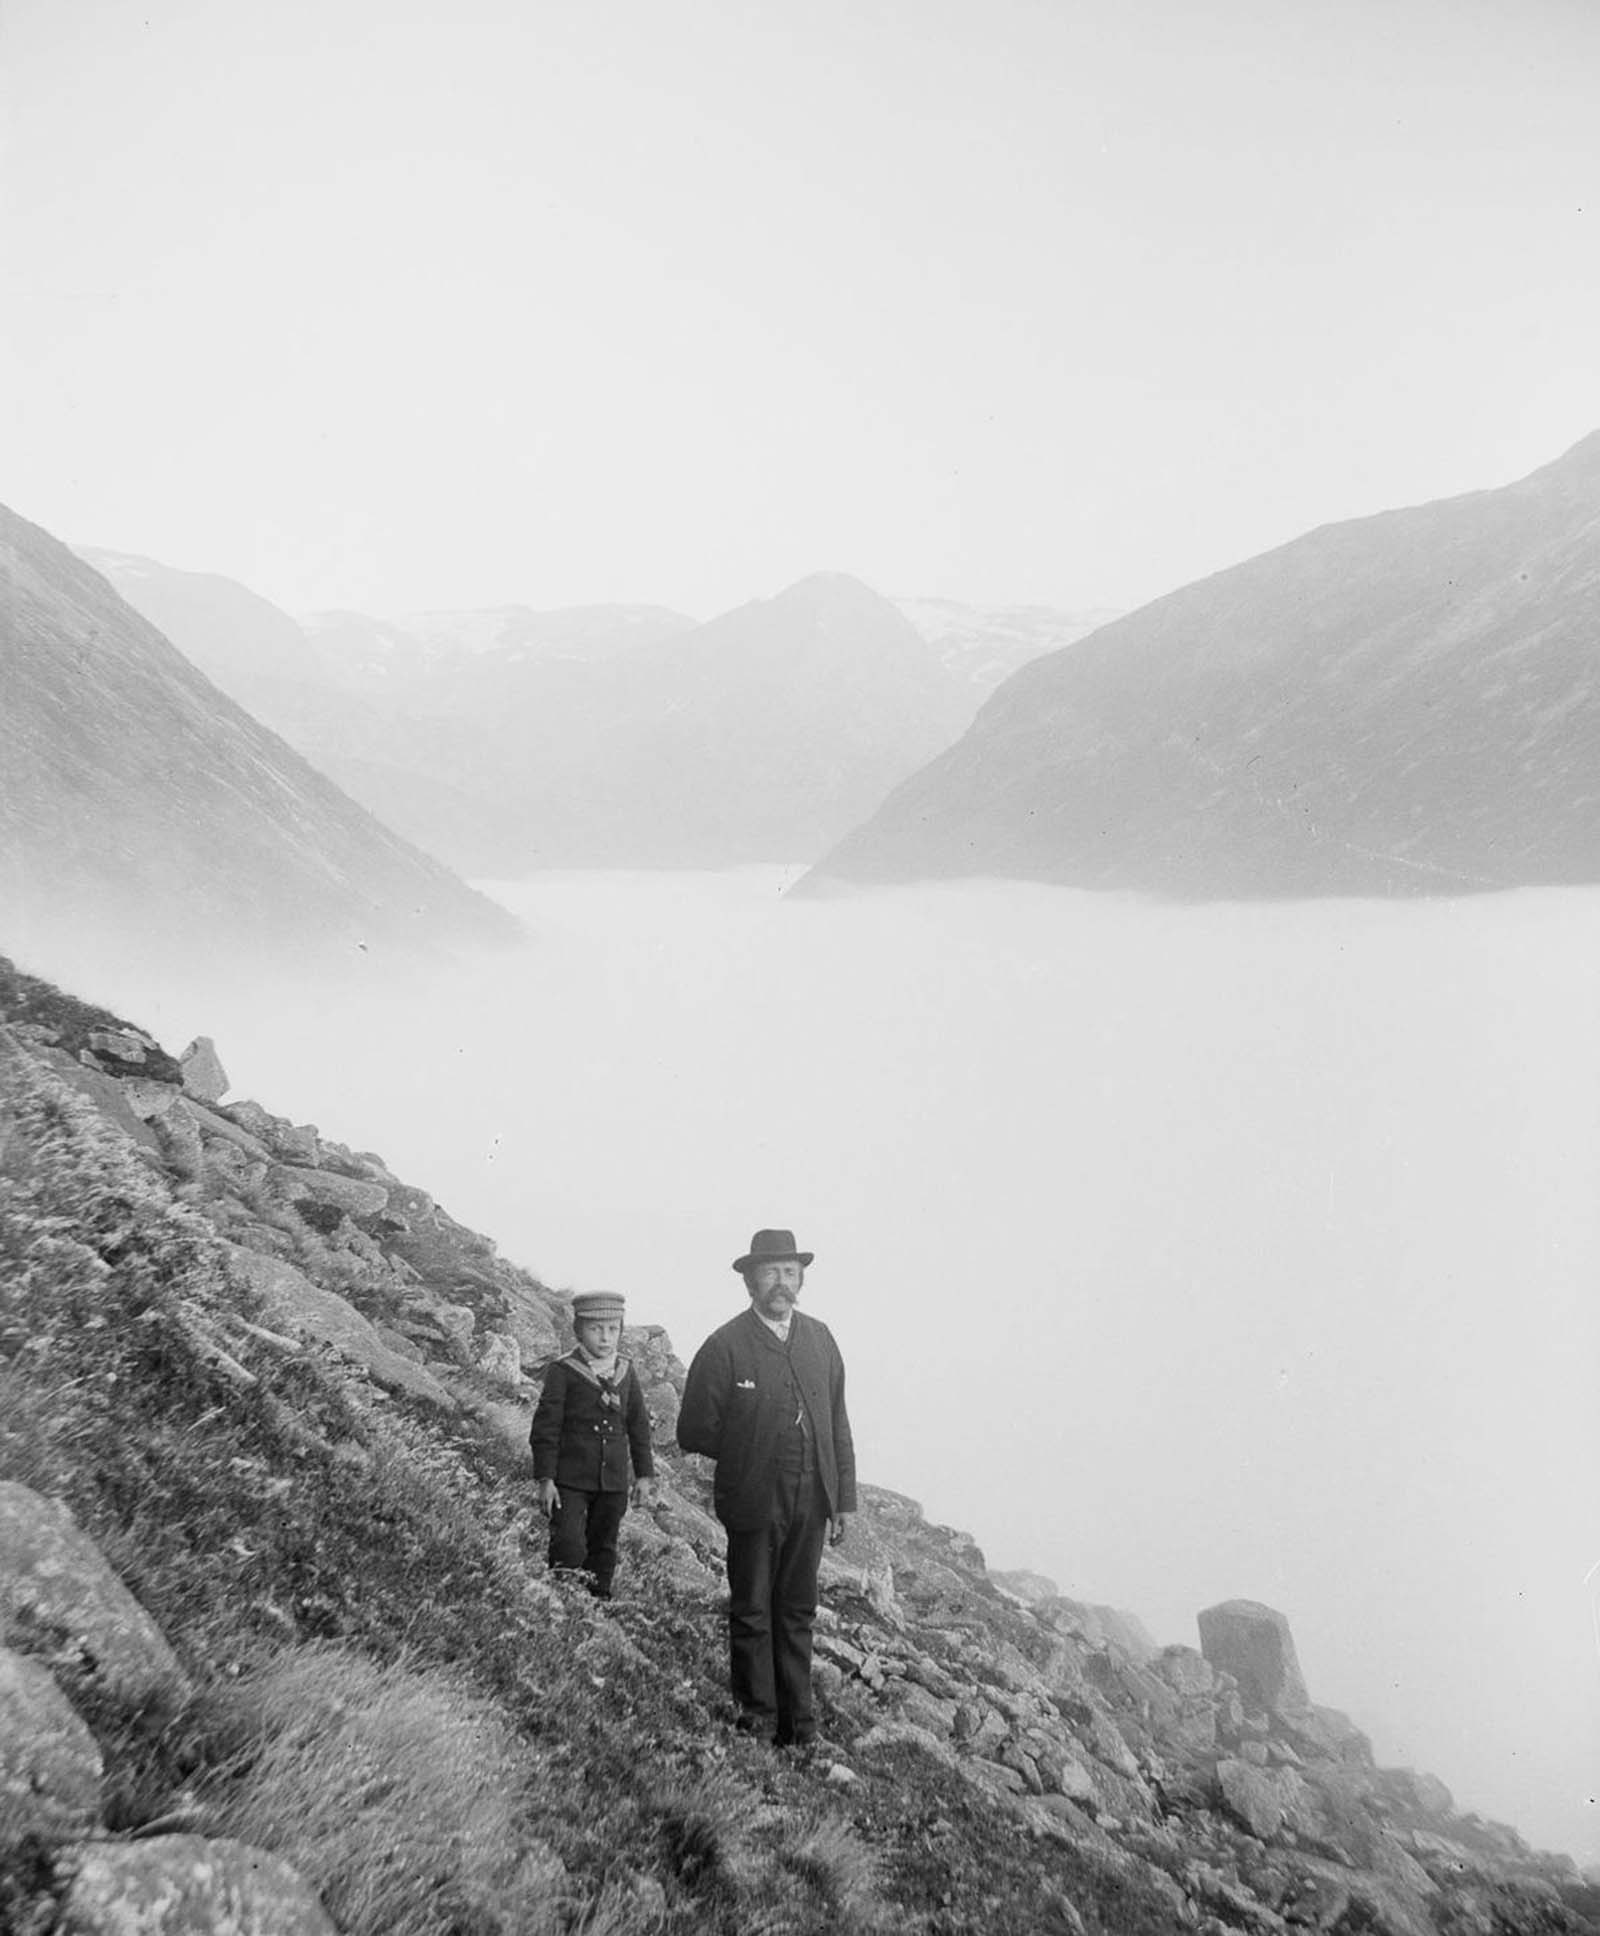 Tøger L. Kronen (1843-1909) and his son Tøger Kronen (1891-1969) in Jostedalen.